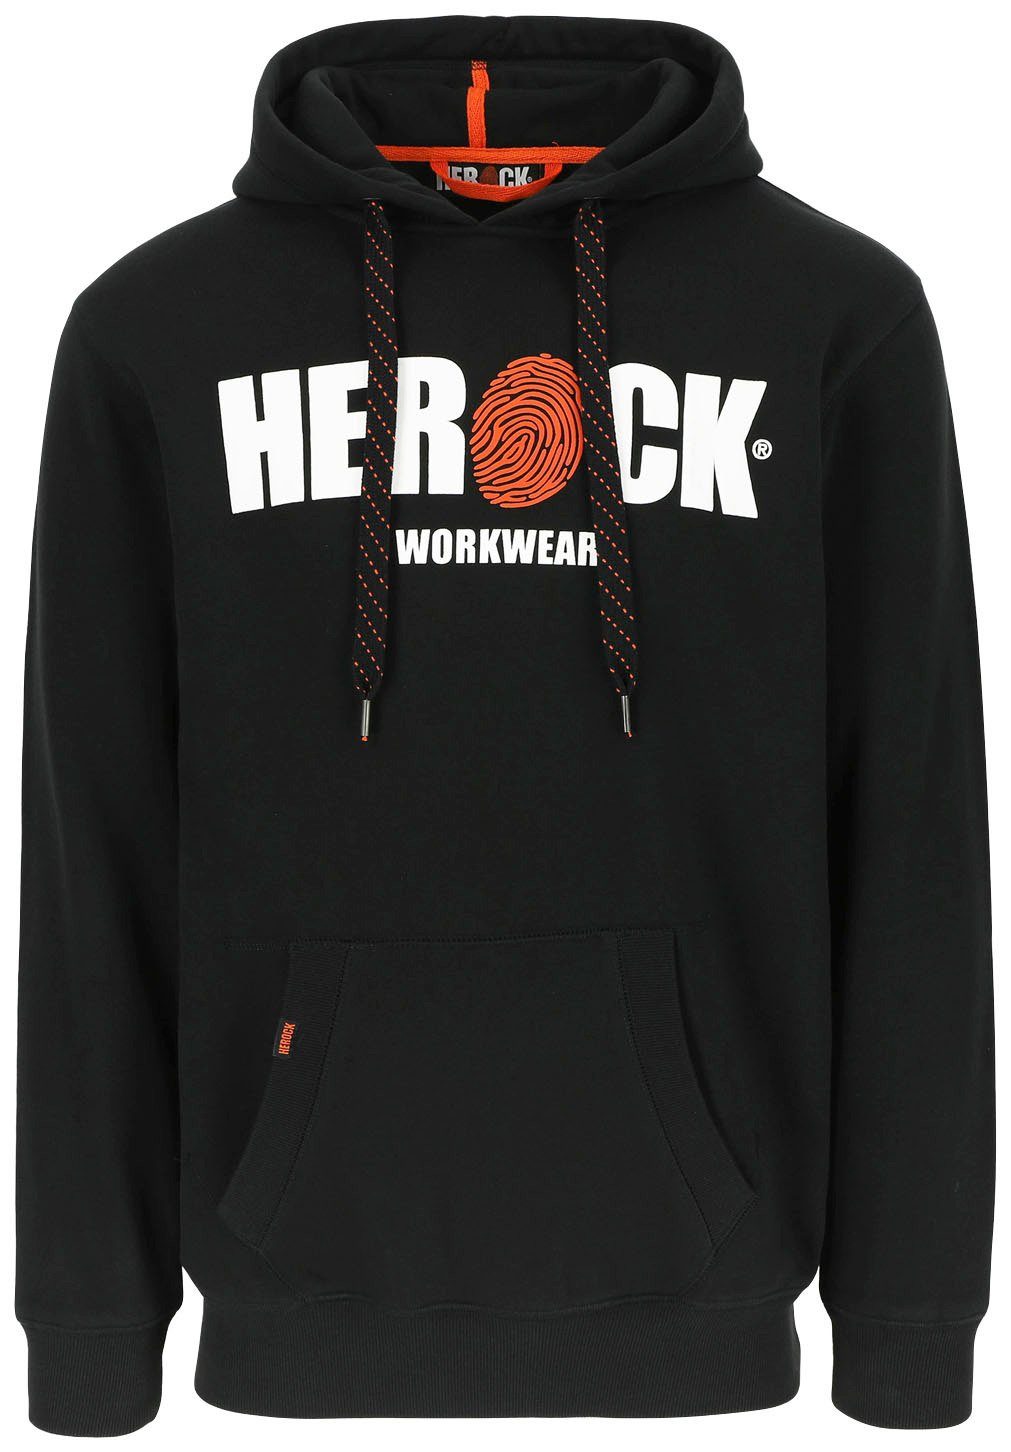 Herock Hoodie HERO Mit angenehm Herock®-Aufdruck, weich sehr und schwarz Kangurutasche